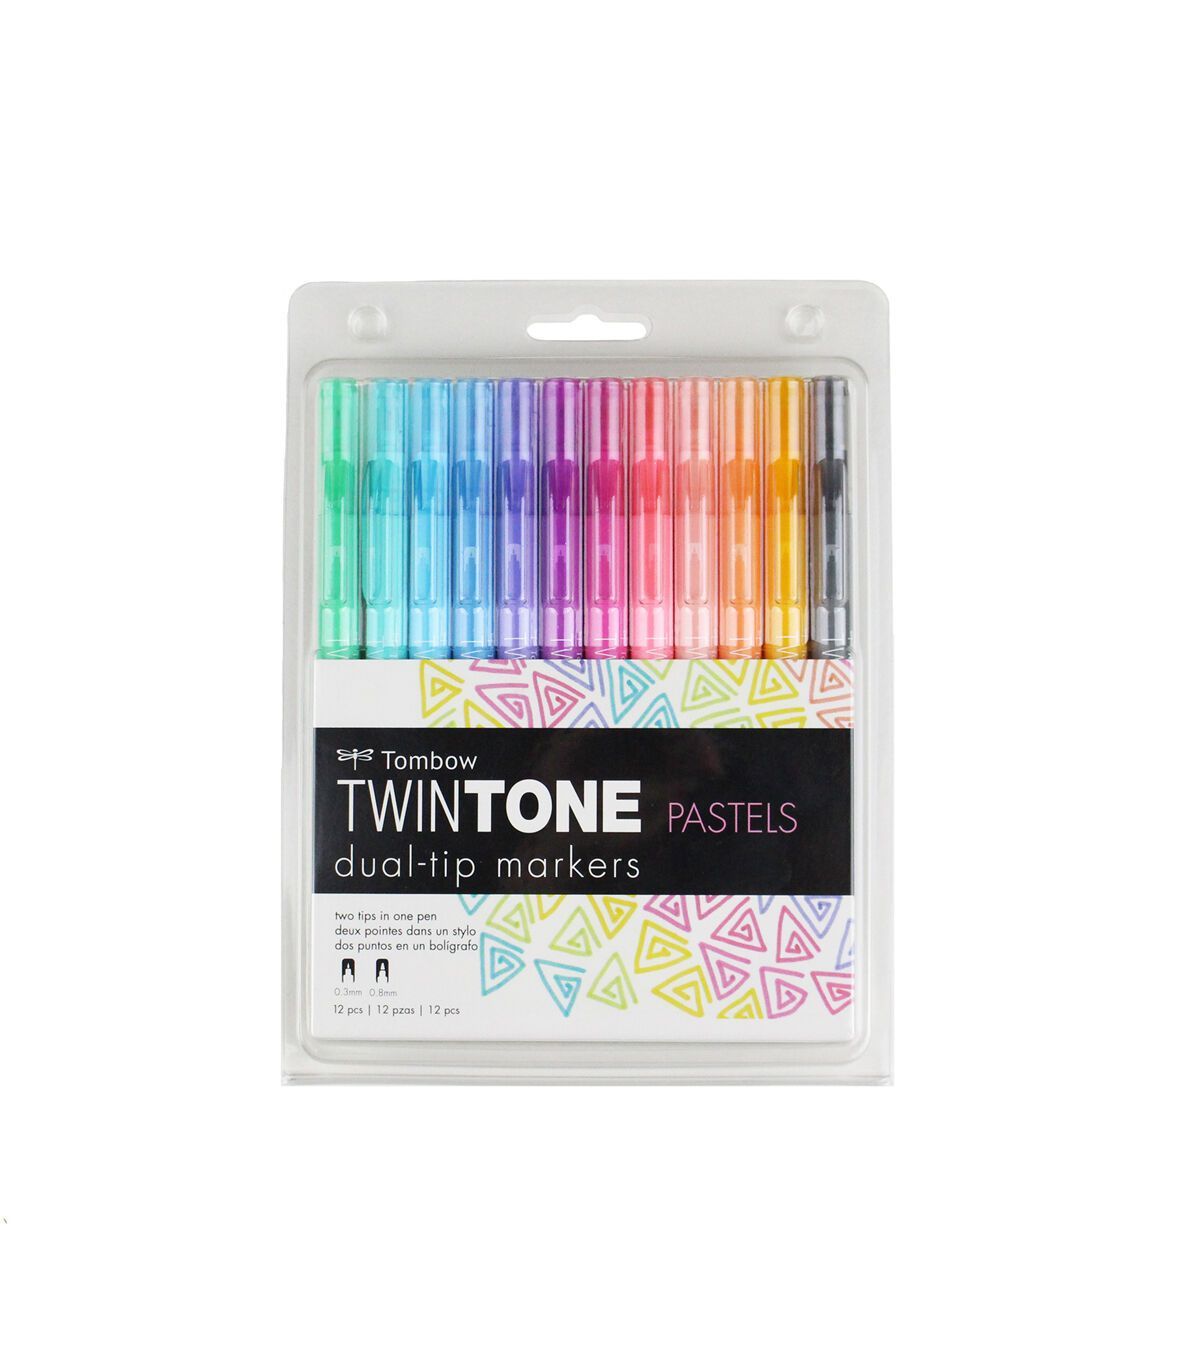 Tombow TwinTone 12 pk Markers Pastels | JOANN - Tombow TwinTone 12 pk Markers Pastels | JOANN -   16 diy School Supplies laurdiy ideas